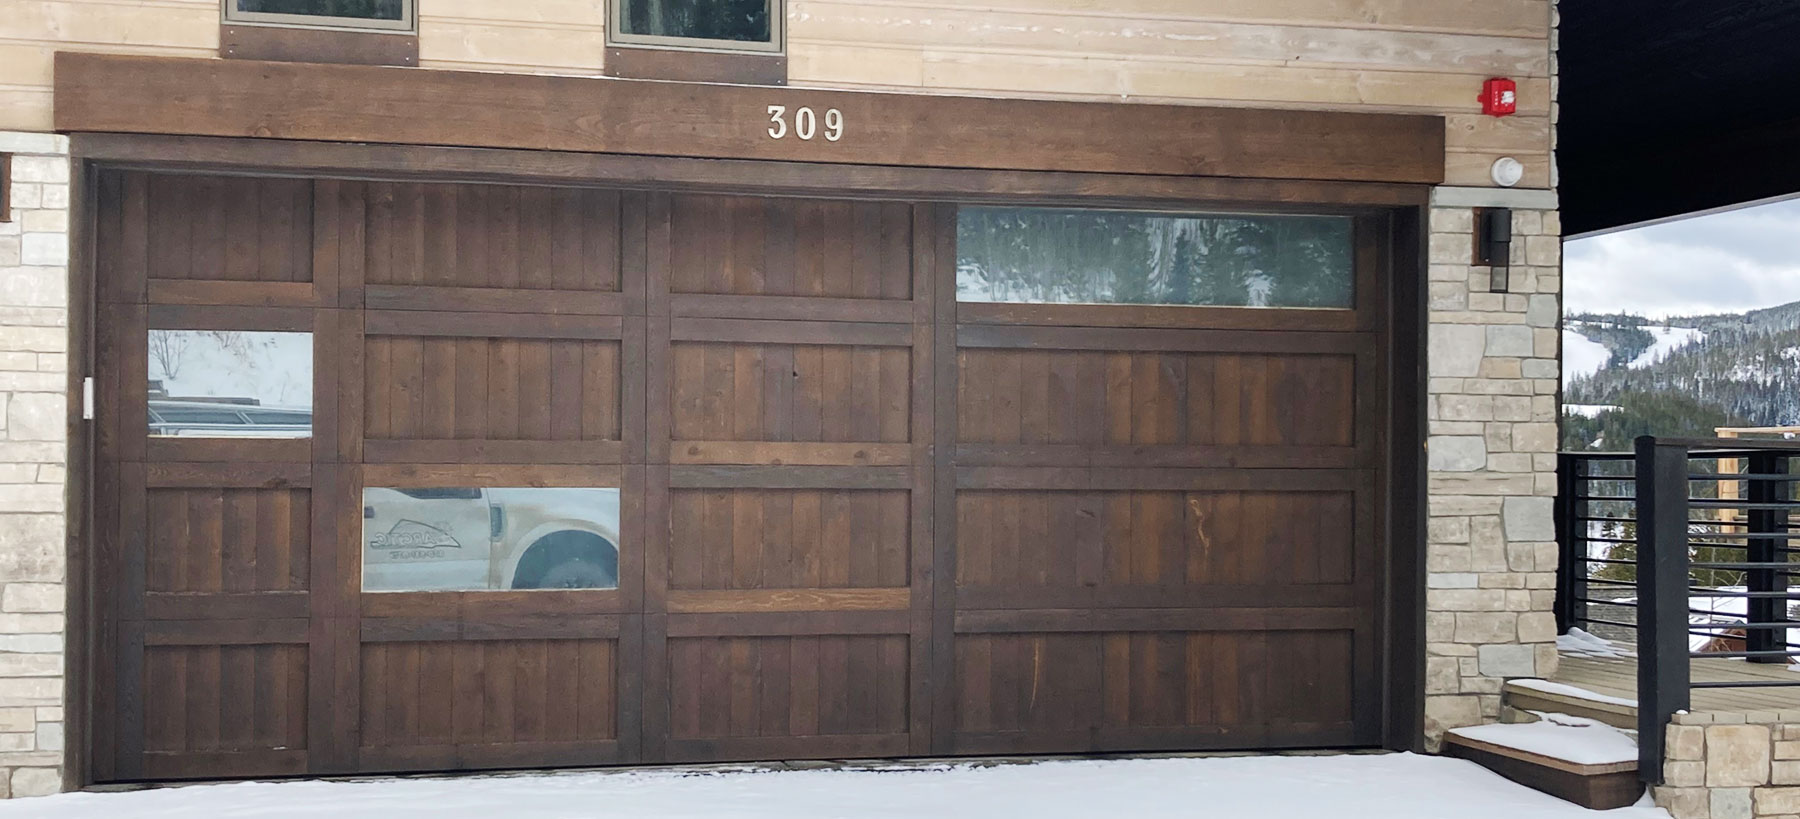 custom wood garage door in Tabernash, CO